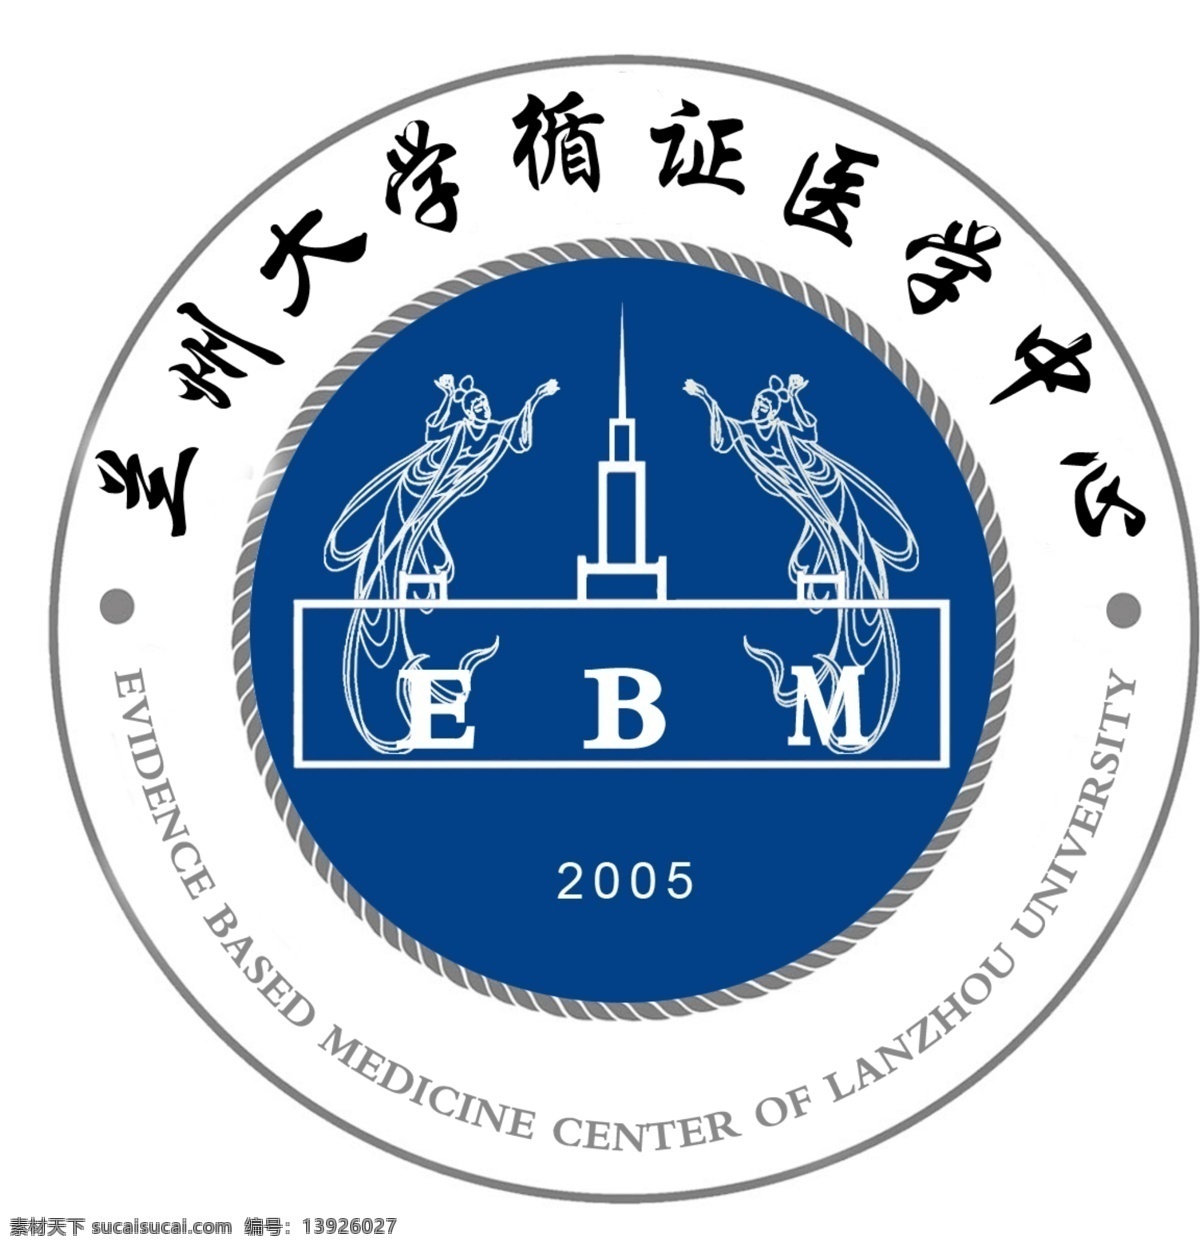 兰大 循 证 logo 飞天 蓝色 麦穗 源文件 ebm 2005 兰州大学 中心 psd源文件 logo设计